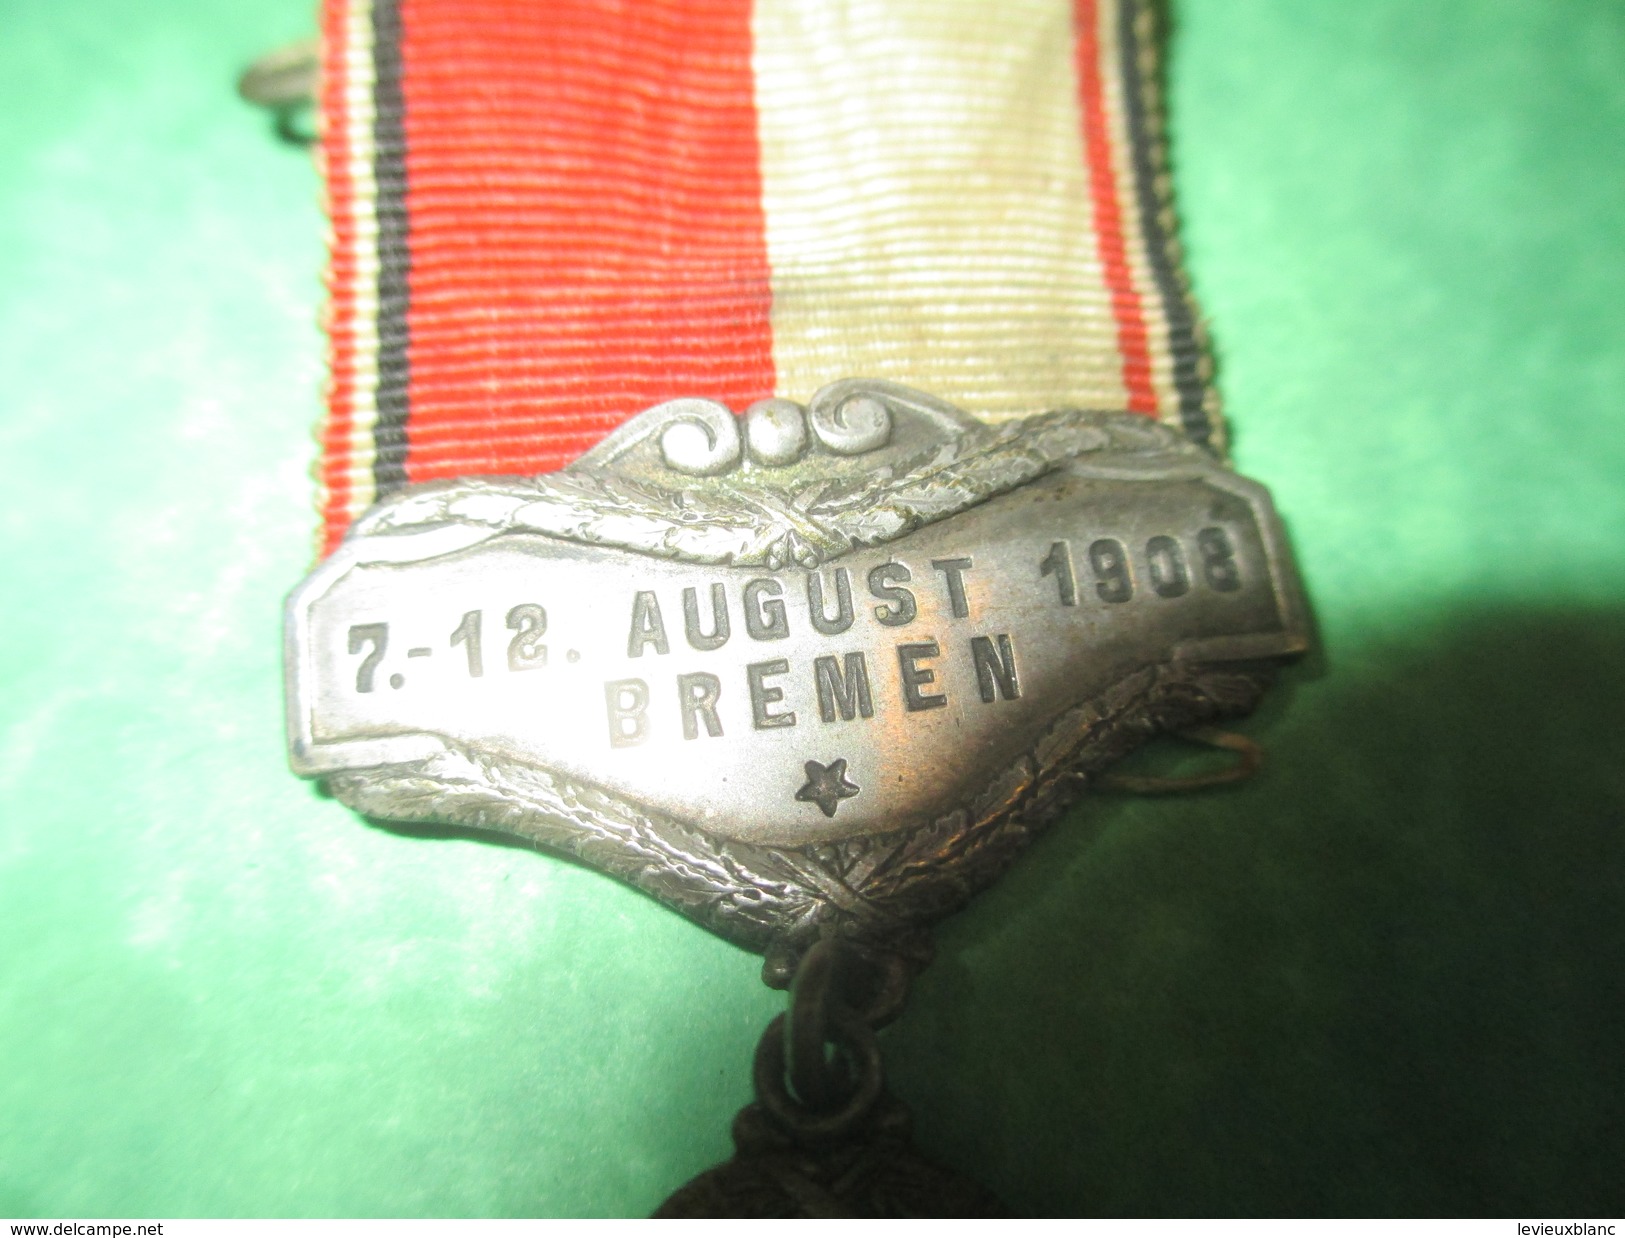 Médaille Pendante à épingle/Sports/Fédération Cycliste Allemande/ BREME//1908          SPO160 - Radsport